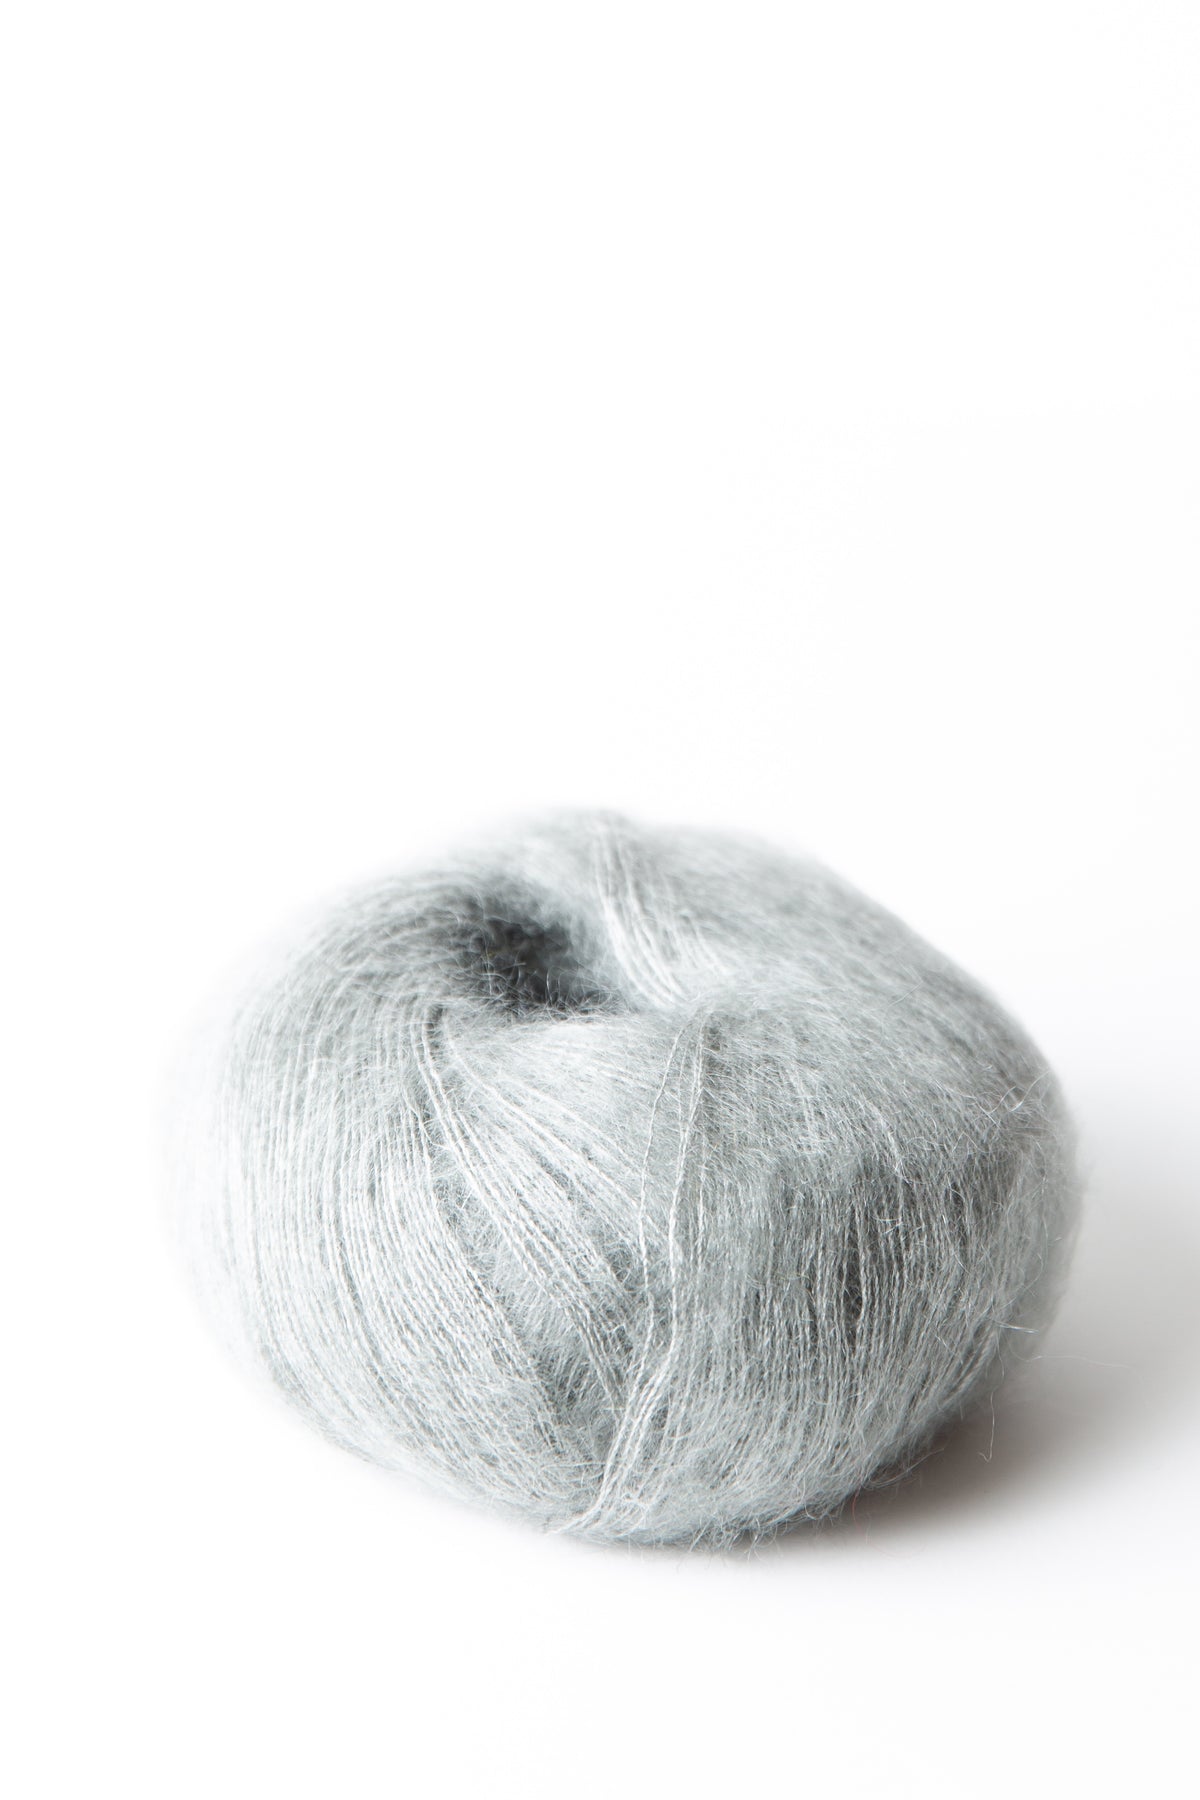 Ubrugelig Rengør rummet Irreplaceable Premia - Lamana | Shop Yarn Online at Beehive Wool Shop